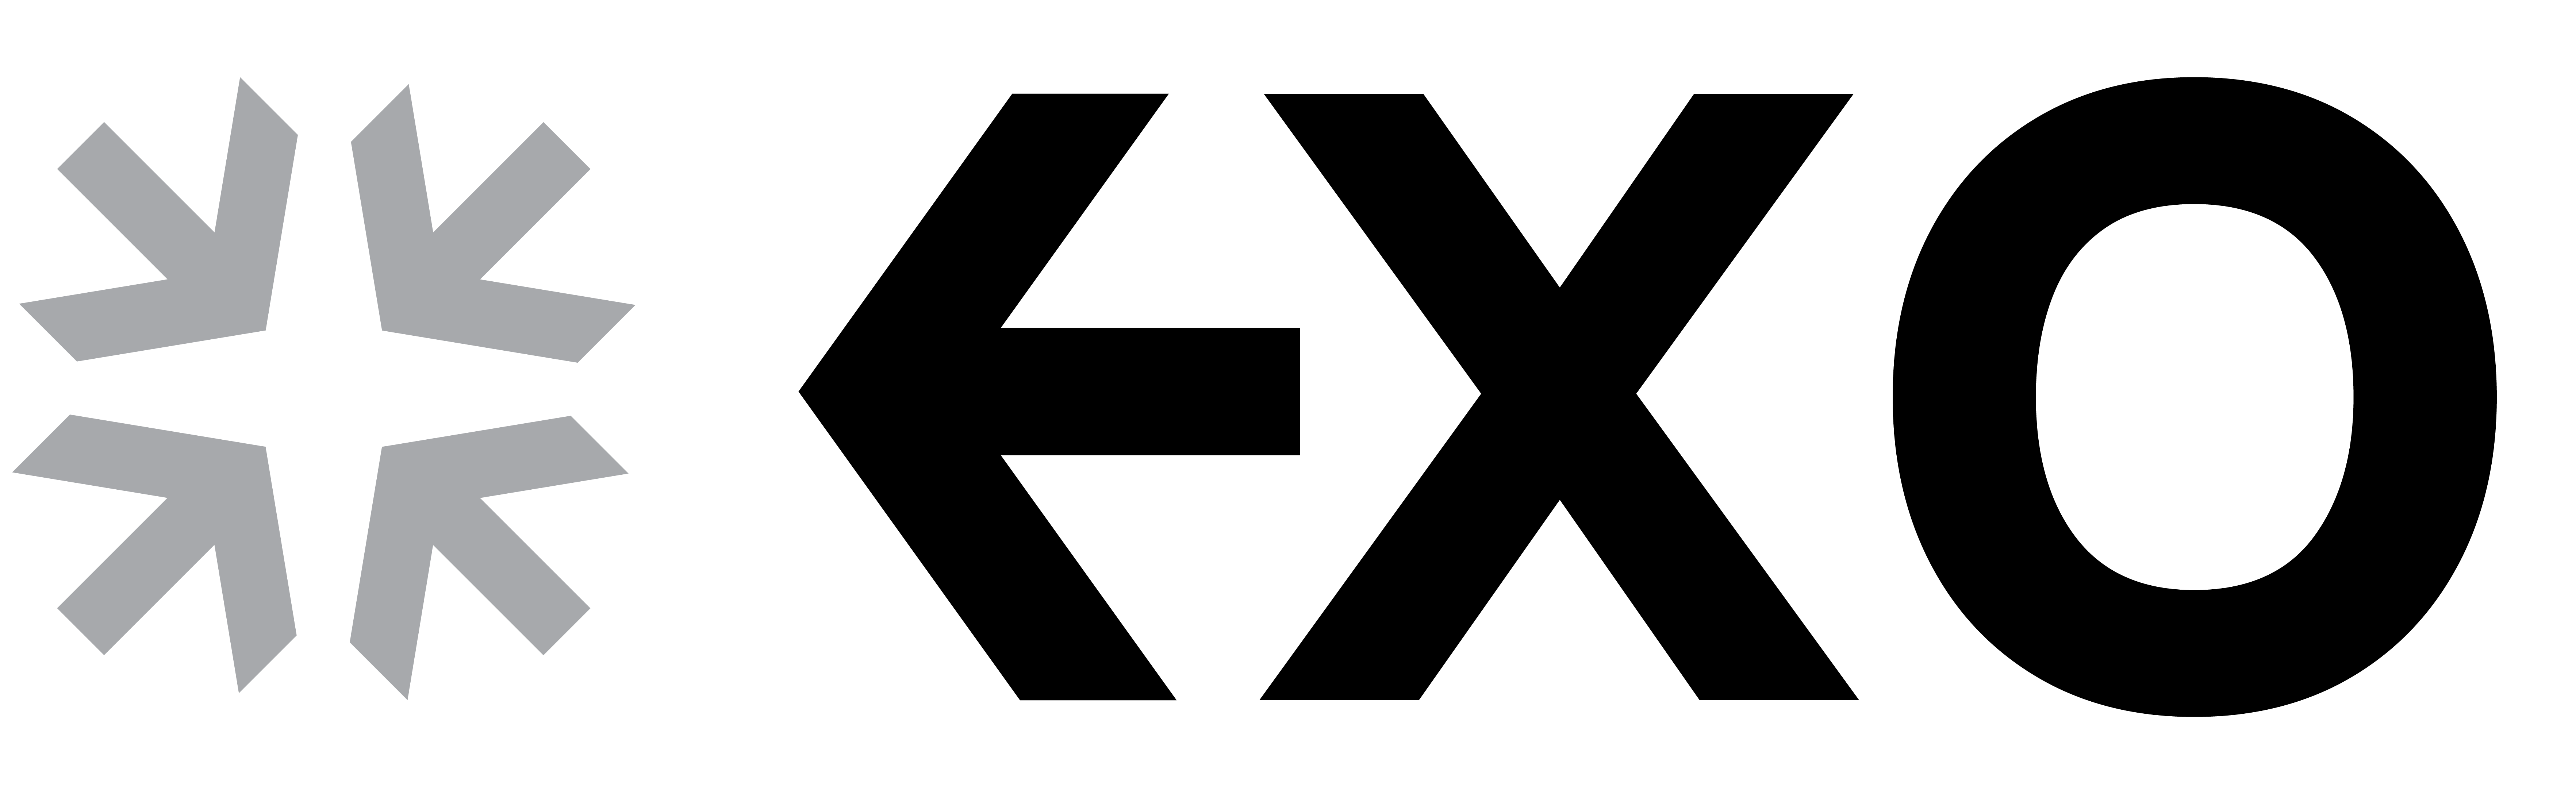 exo lighting logo